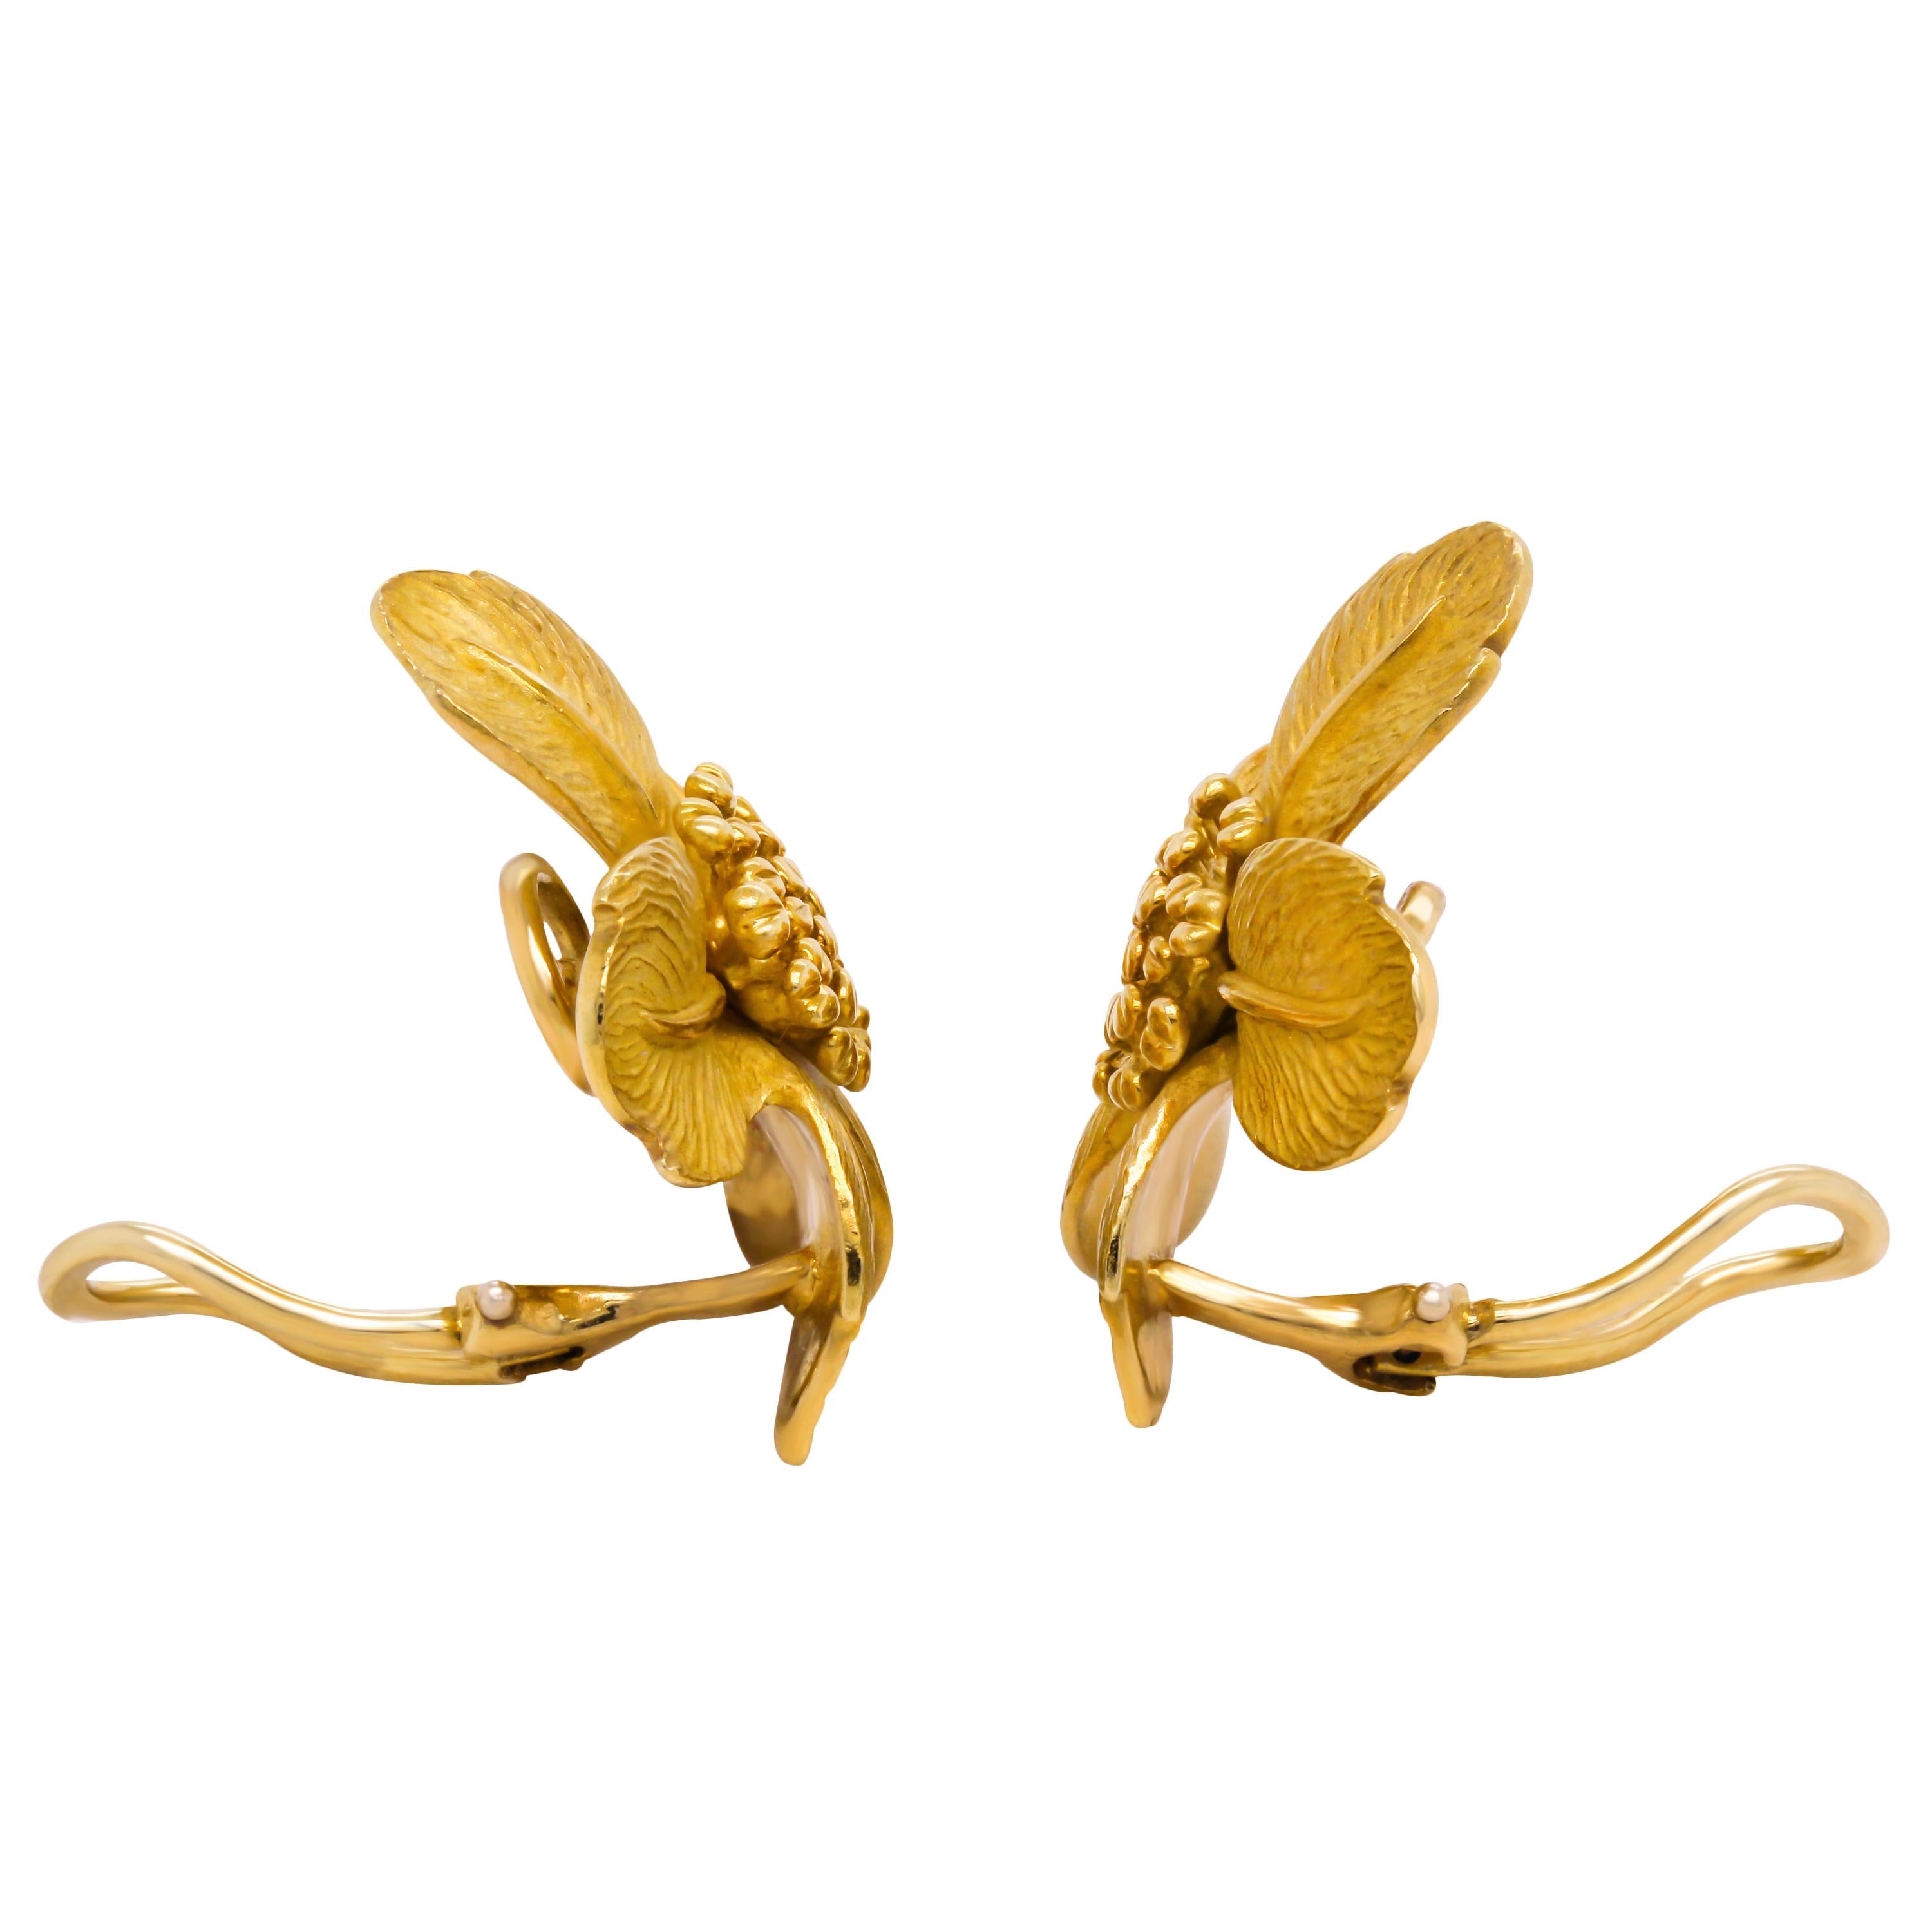 Tiffany & Co. Dogwood Kollektion 18K Gelbgold Große Rosenblumen-Ohrringe

Die seltenen und originellen Dogwood-Ohrringe aus massivem 18-karätigem Gelbgold mit glänzendem, hochglänzendem und mattem Finish. Diese Kollektion wurde in den 1980er Jahren